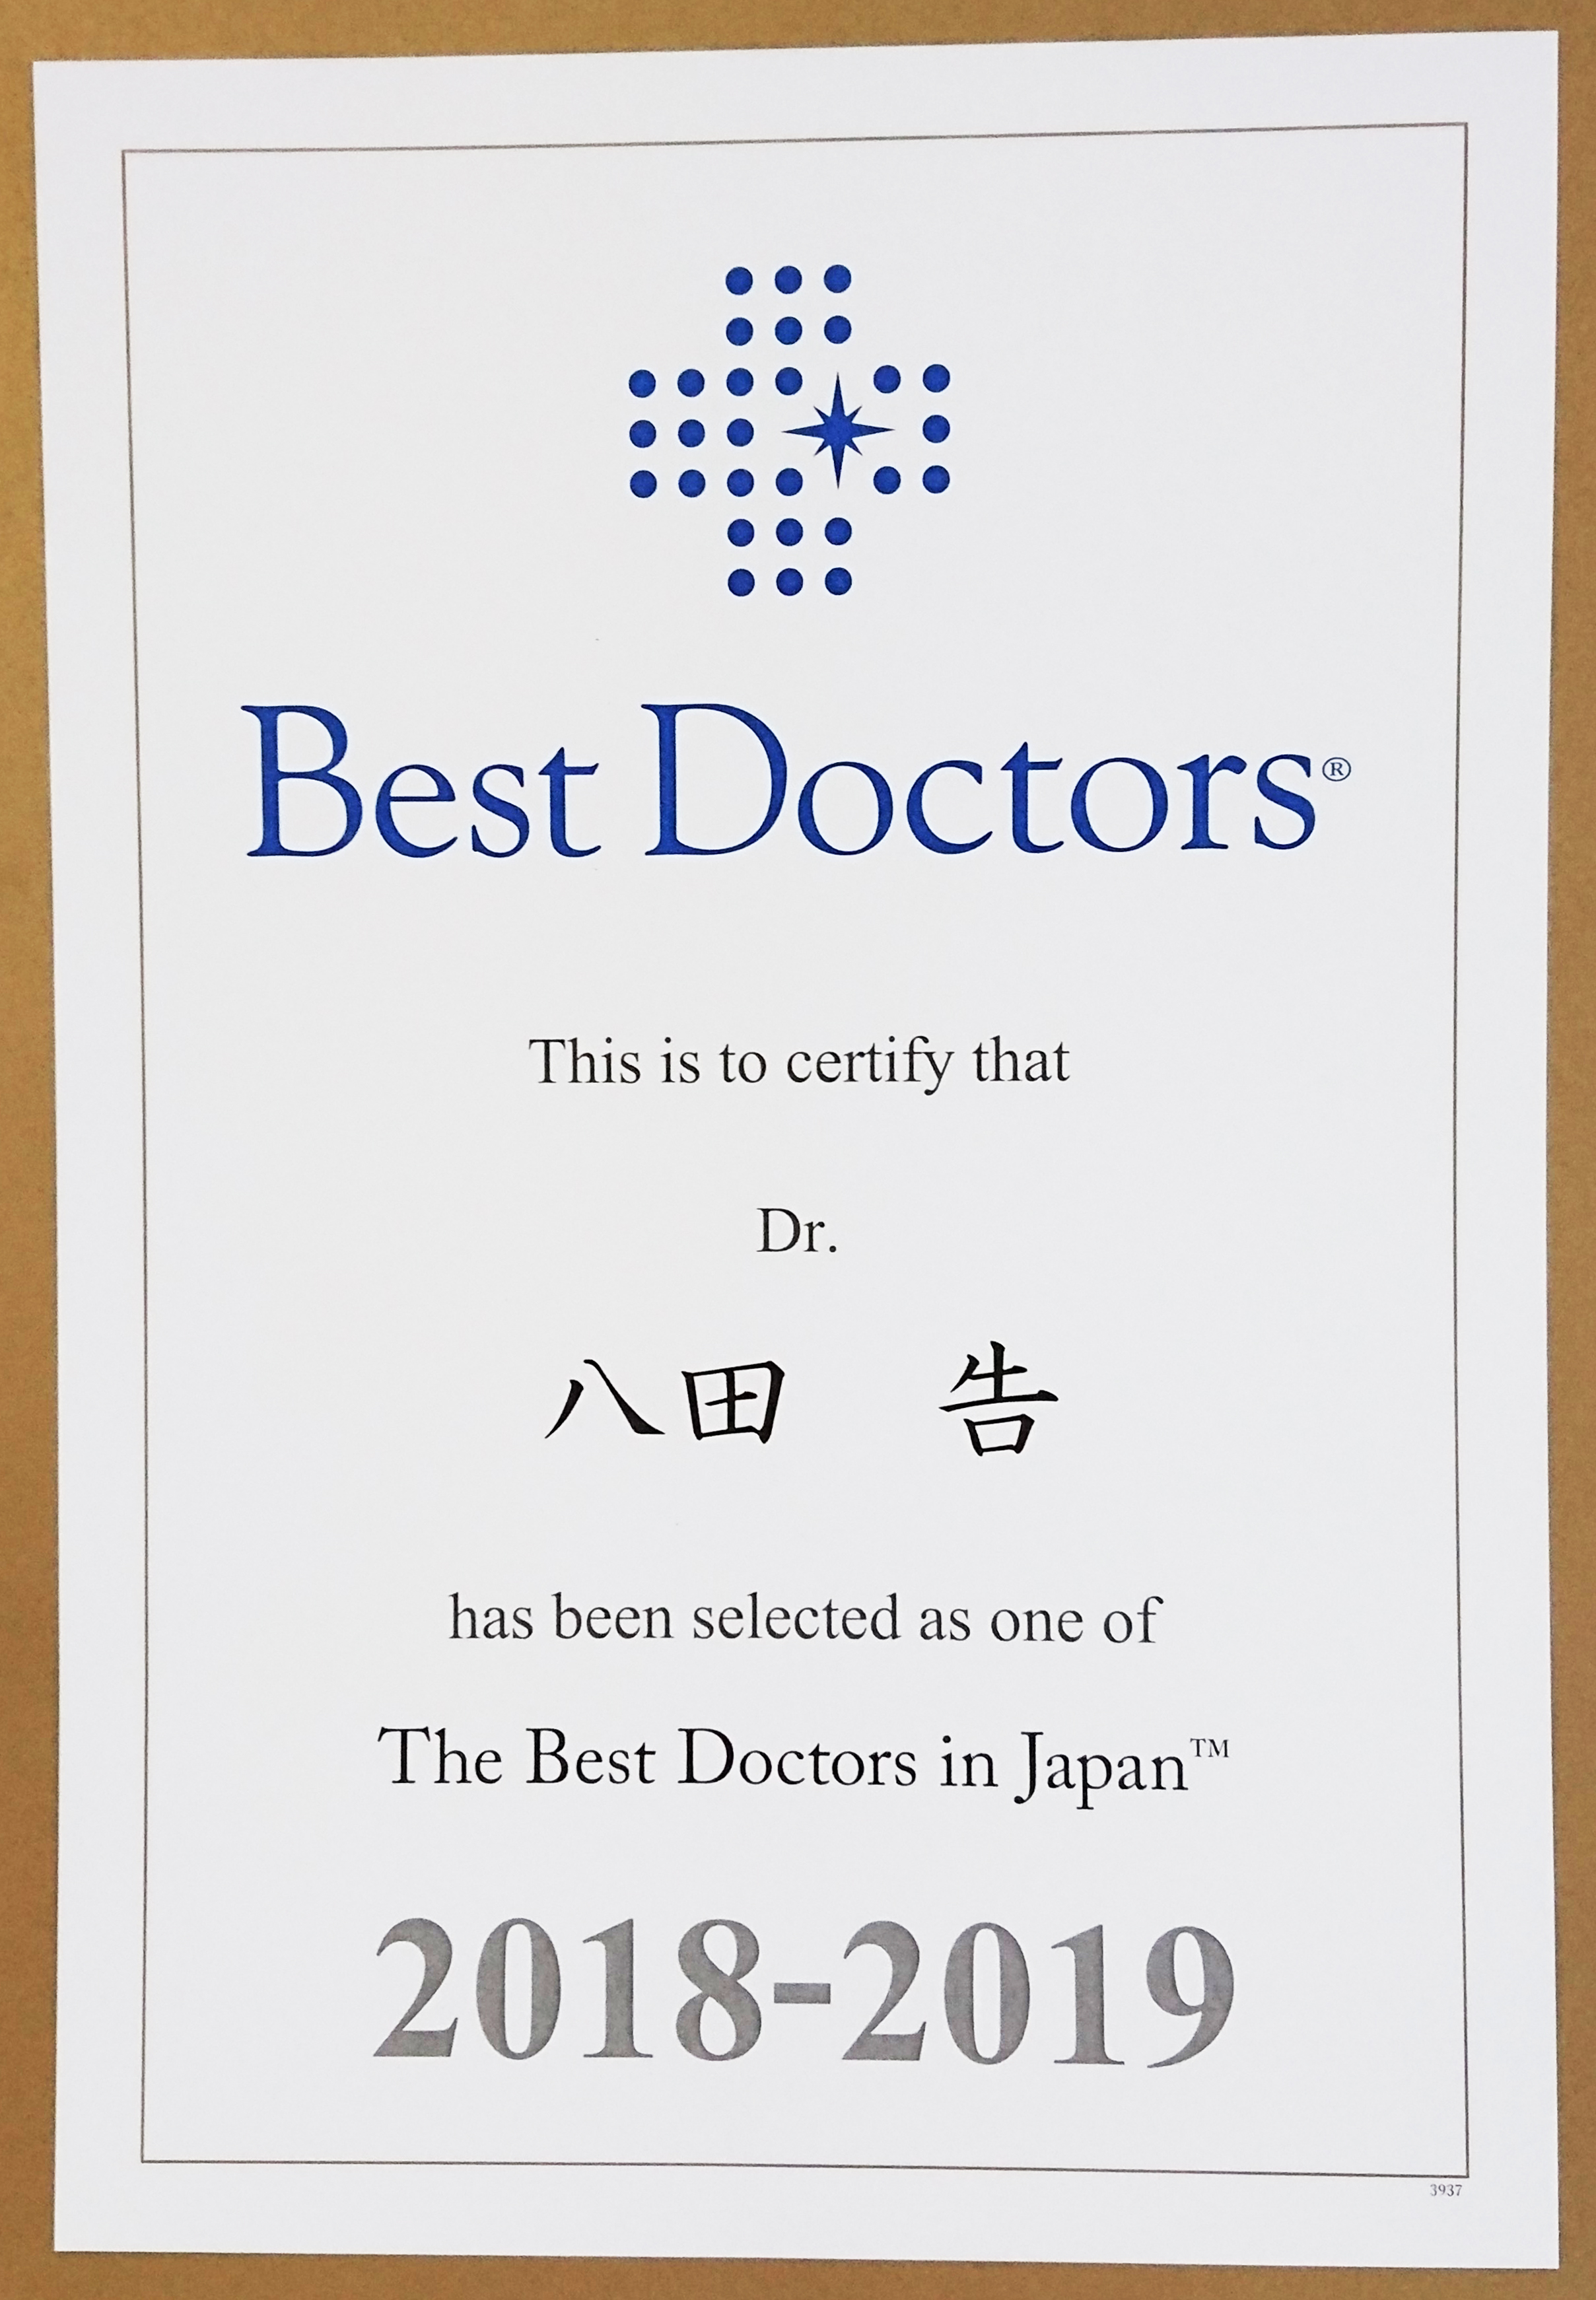 八田 告院長が “The Best Doctors in Japan 2018-2019”に選出されました